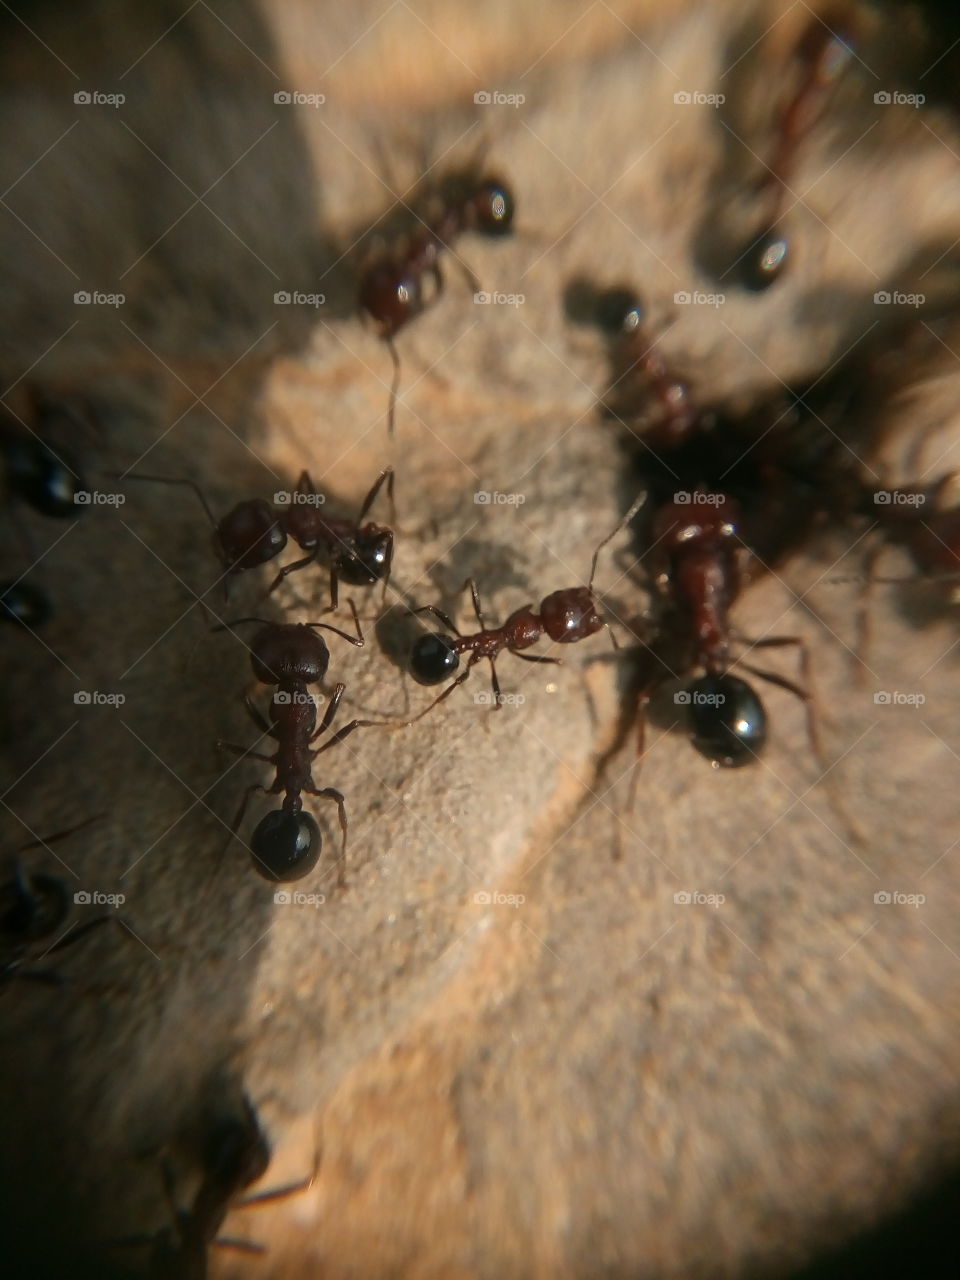 talking ants